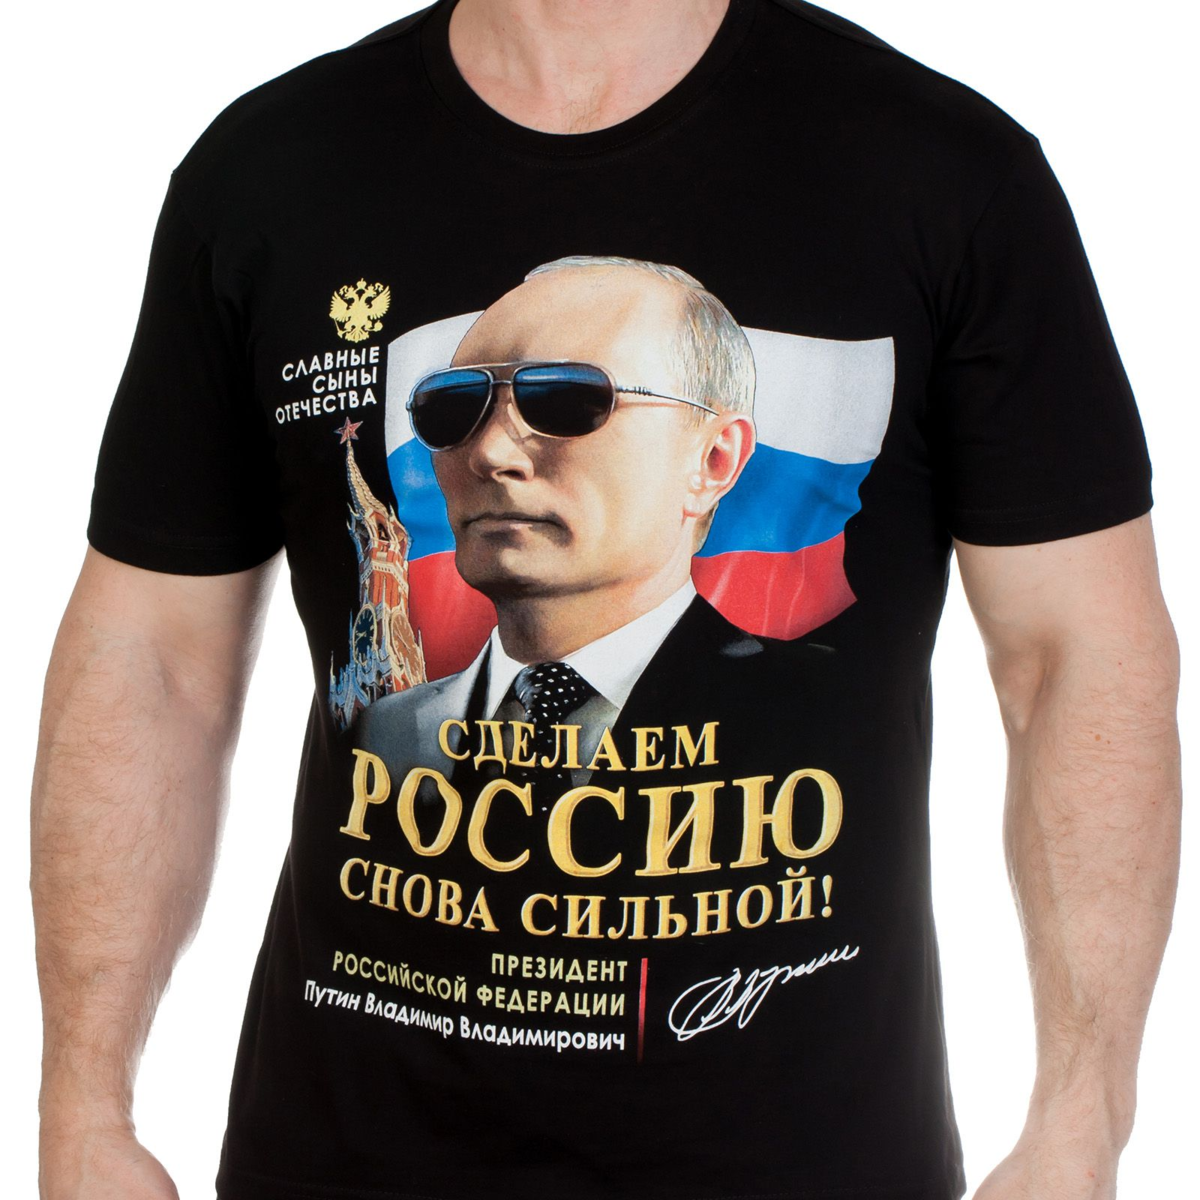 Да я русский сделано в россии. Футболки мужские с Путиным.